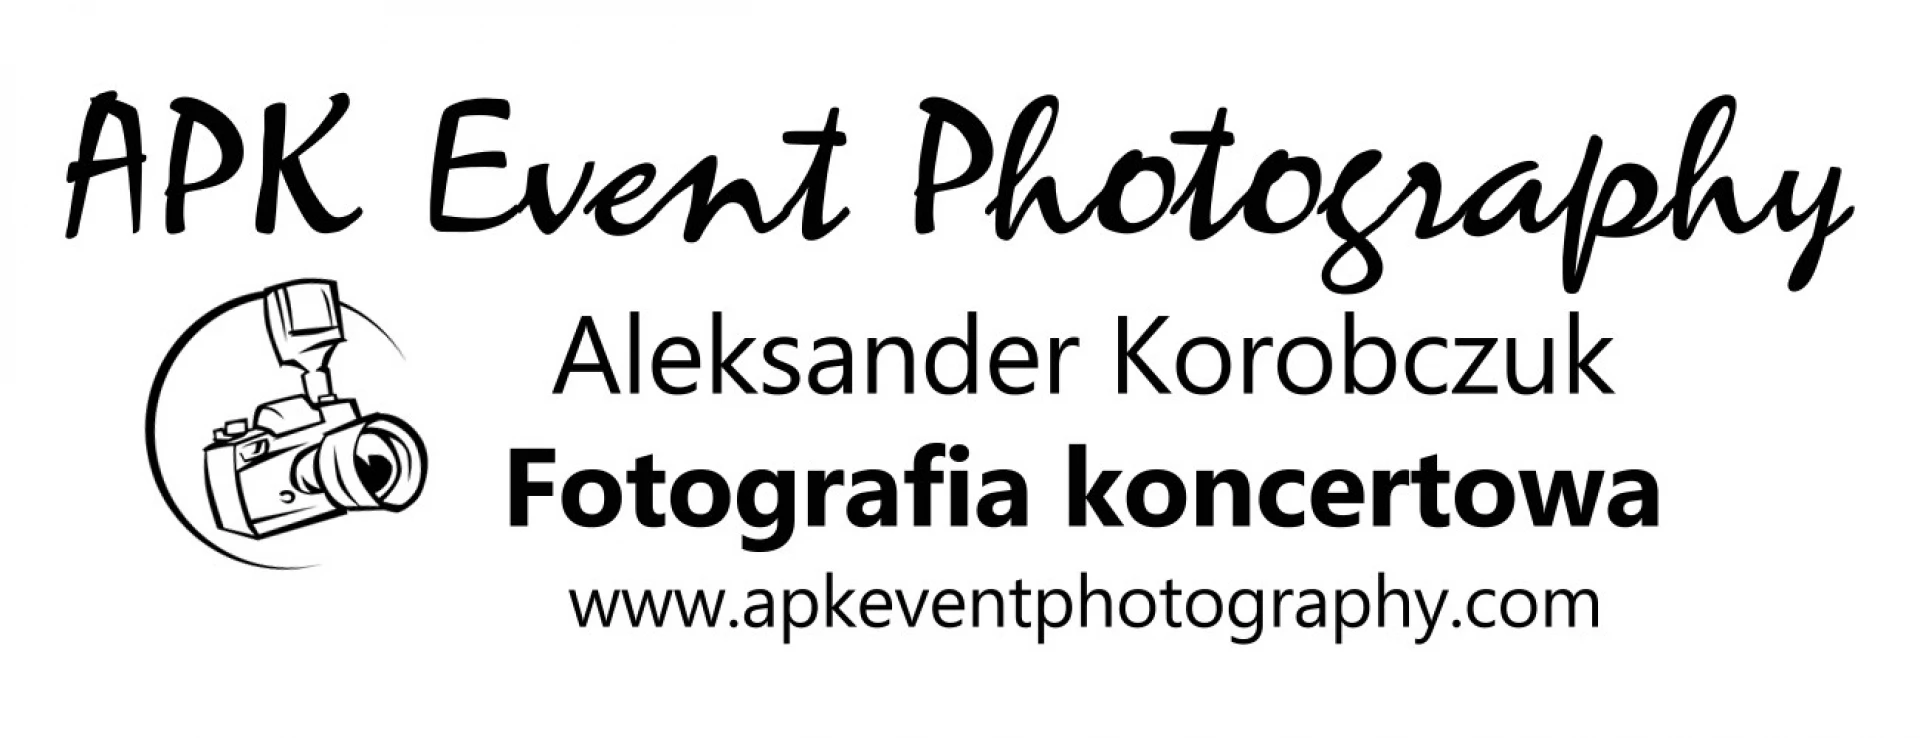 portfolio zdjecia znany fotograf apk-event-photography